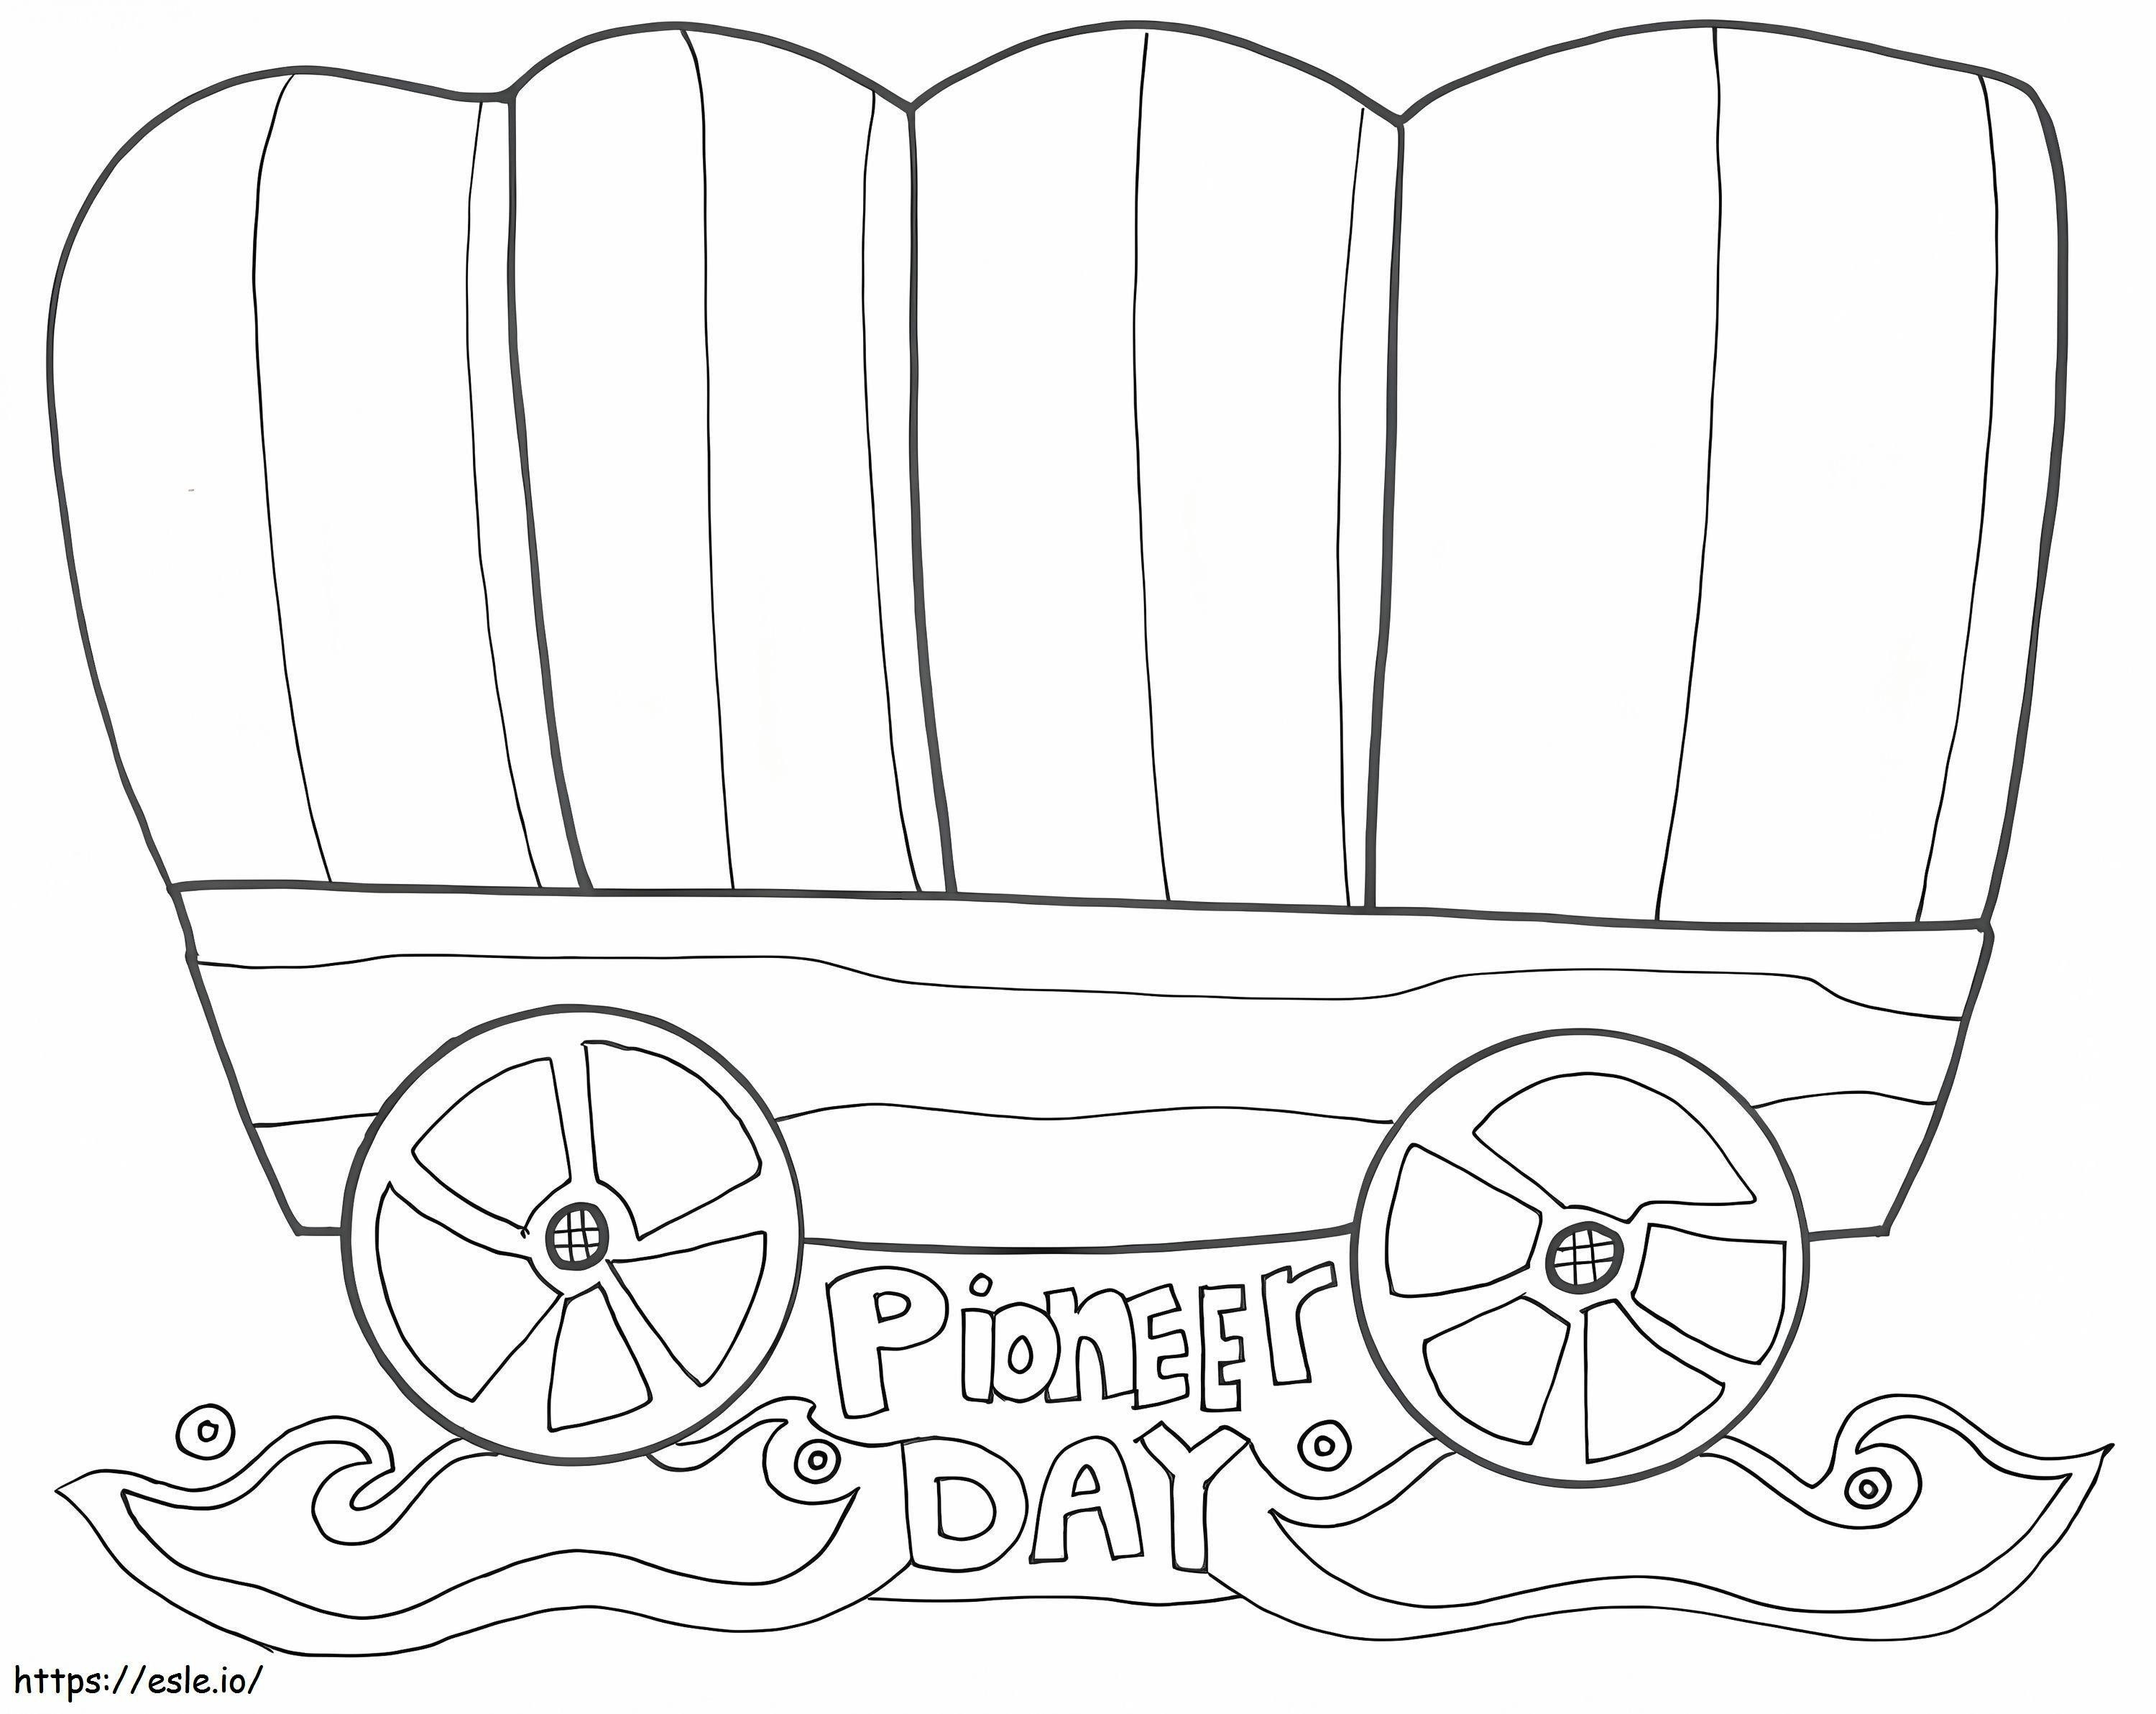 Dia do Pioneiro 5 para colorir